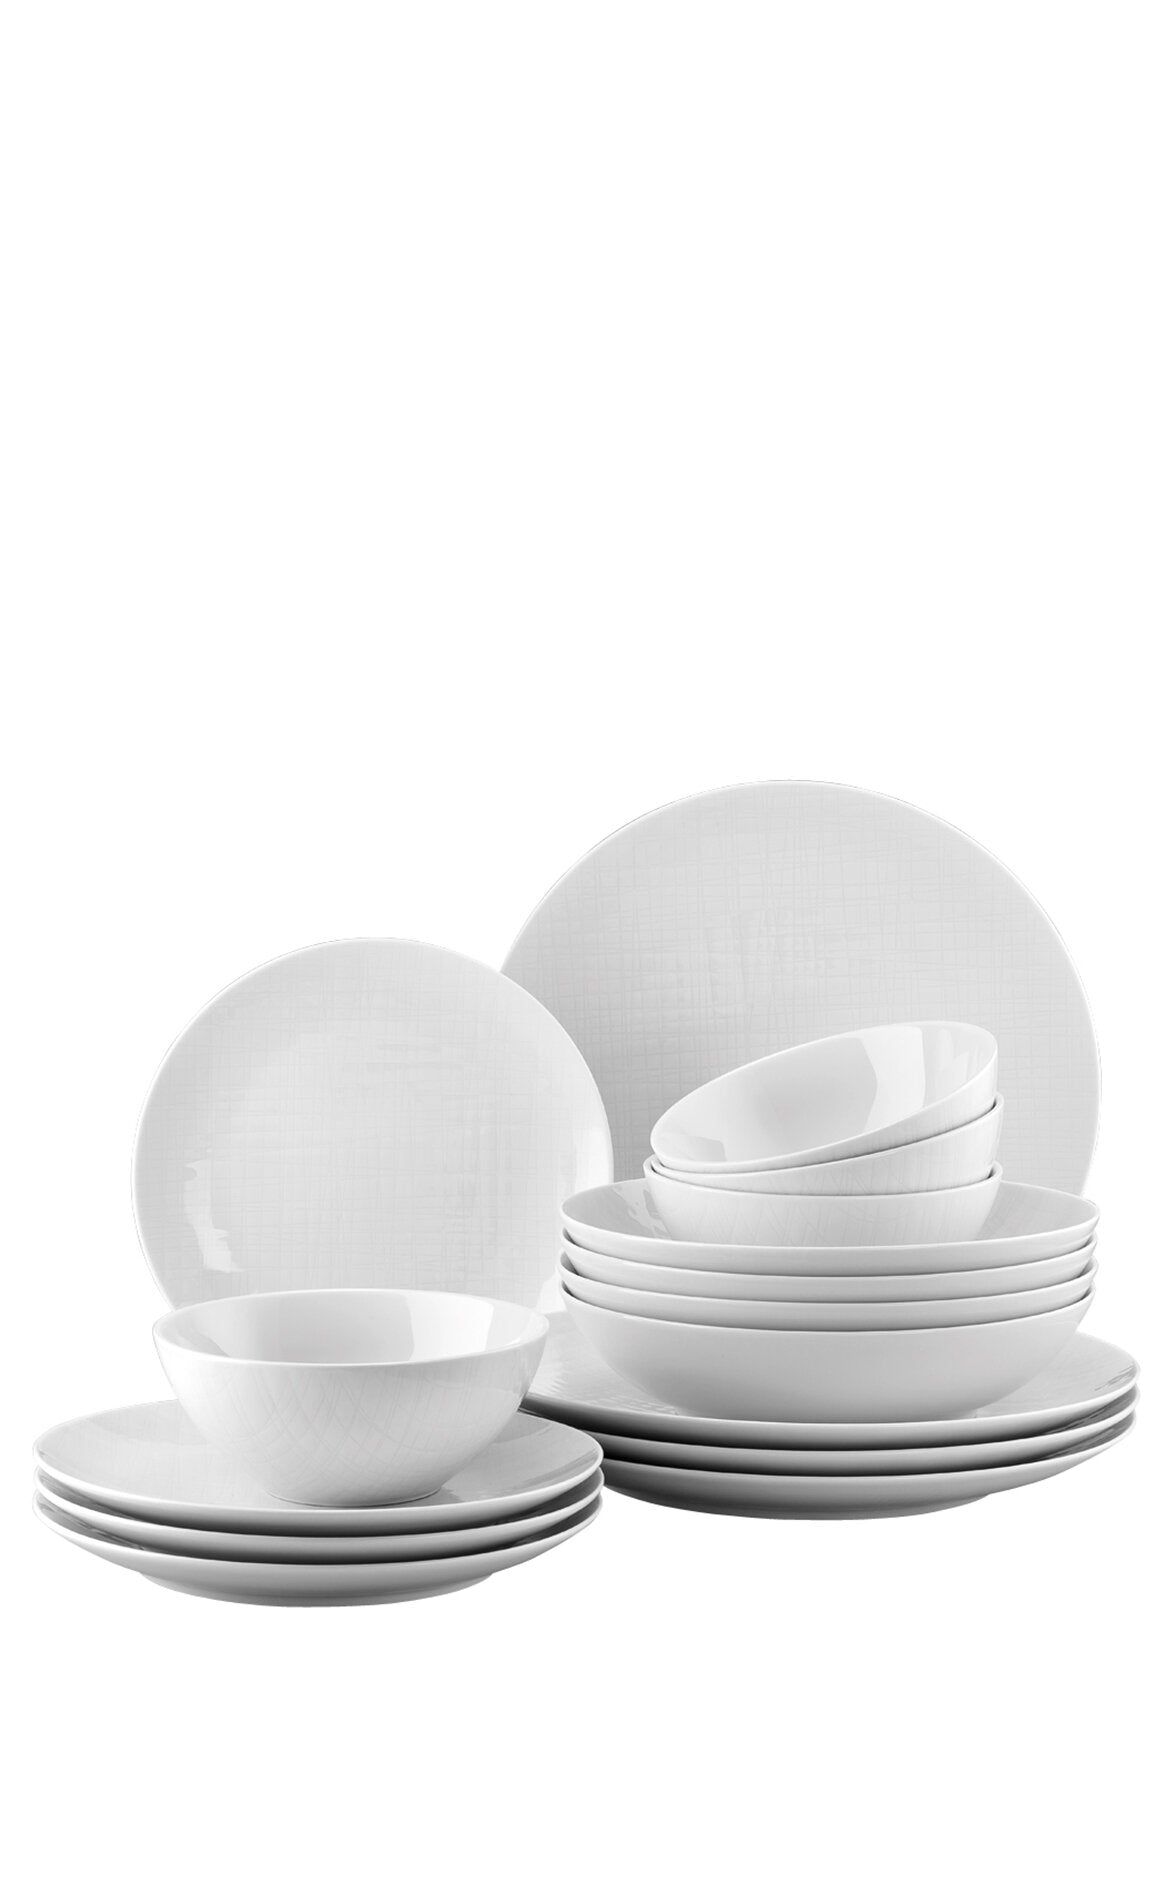 ROSENTHAL Mesh Beyaz 4 Kişilik Porselen Yemek Takımı 16 parça D’Maison 